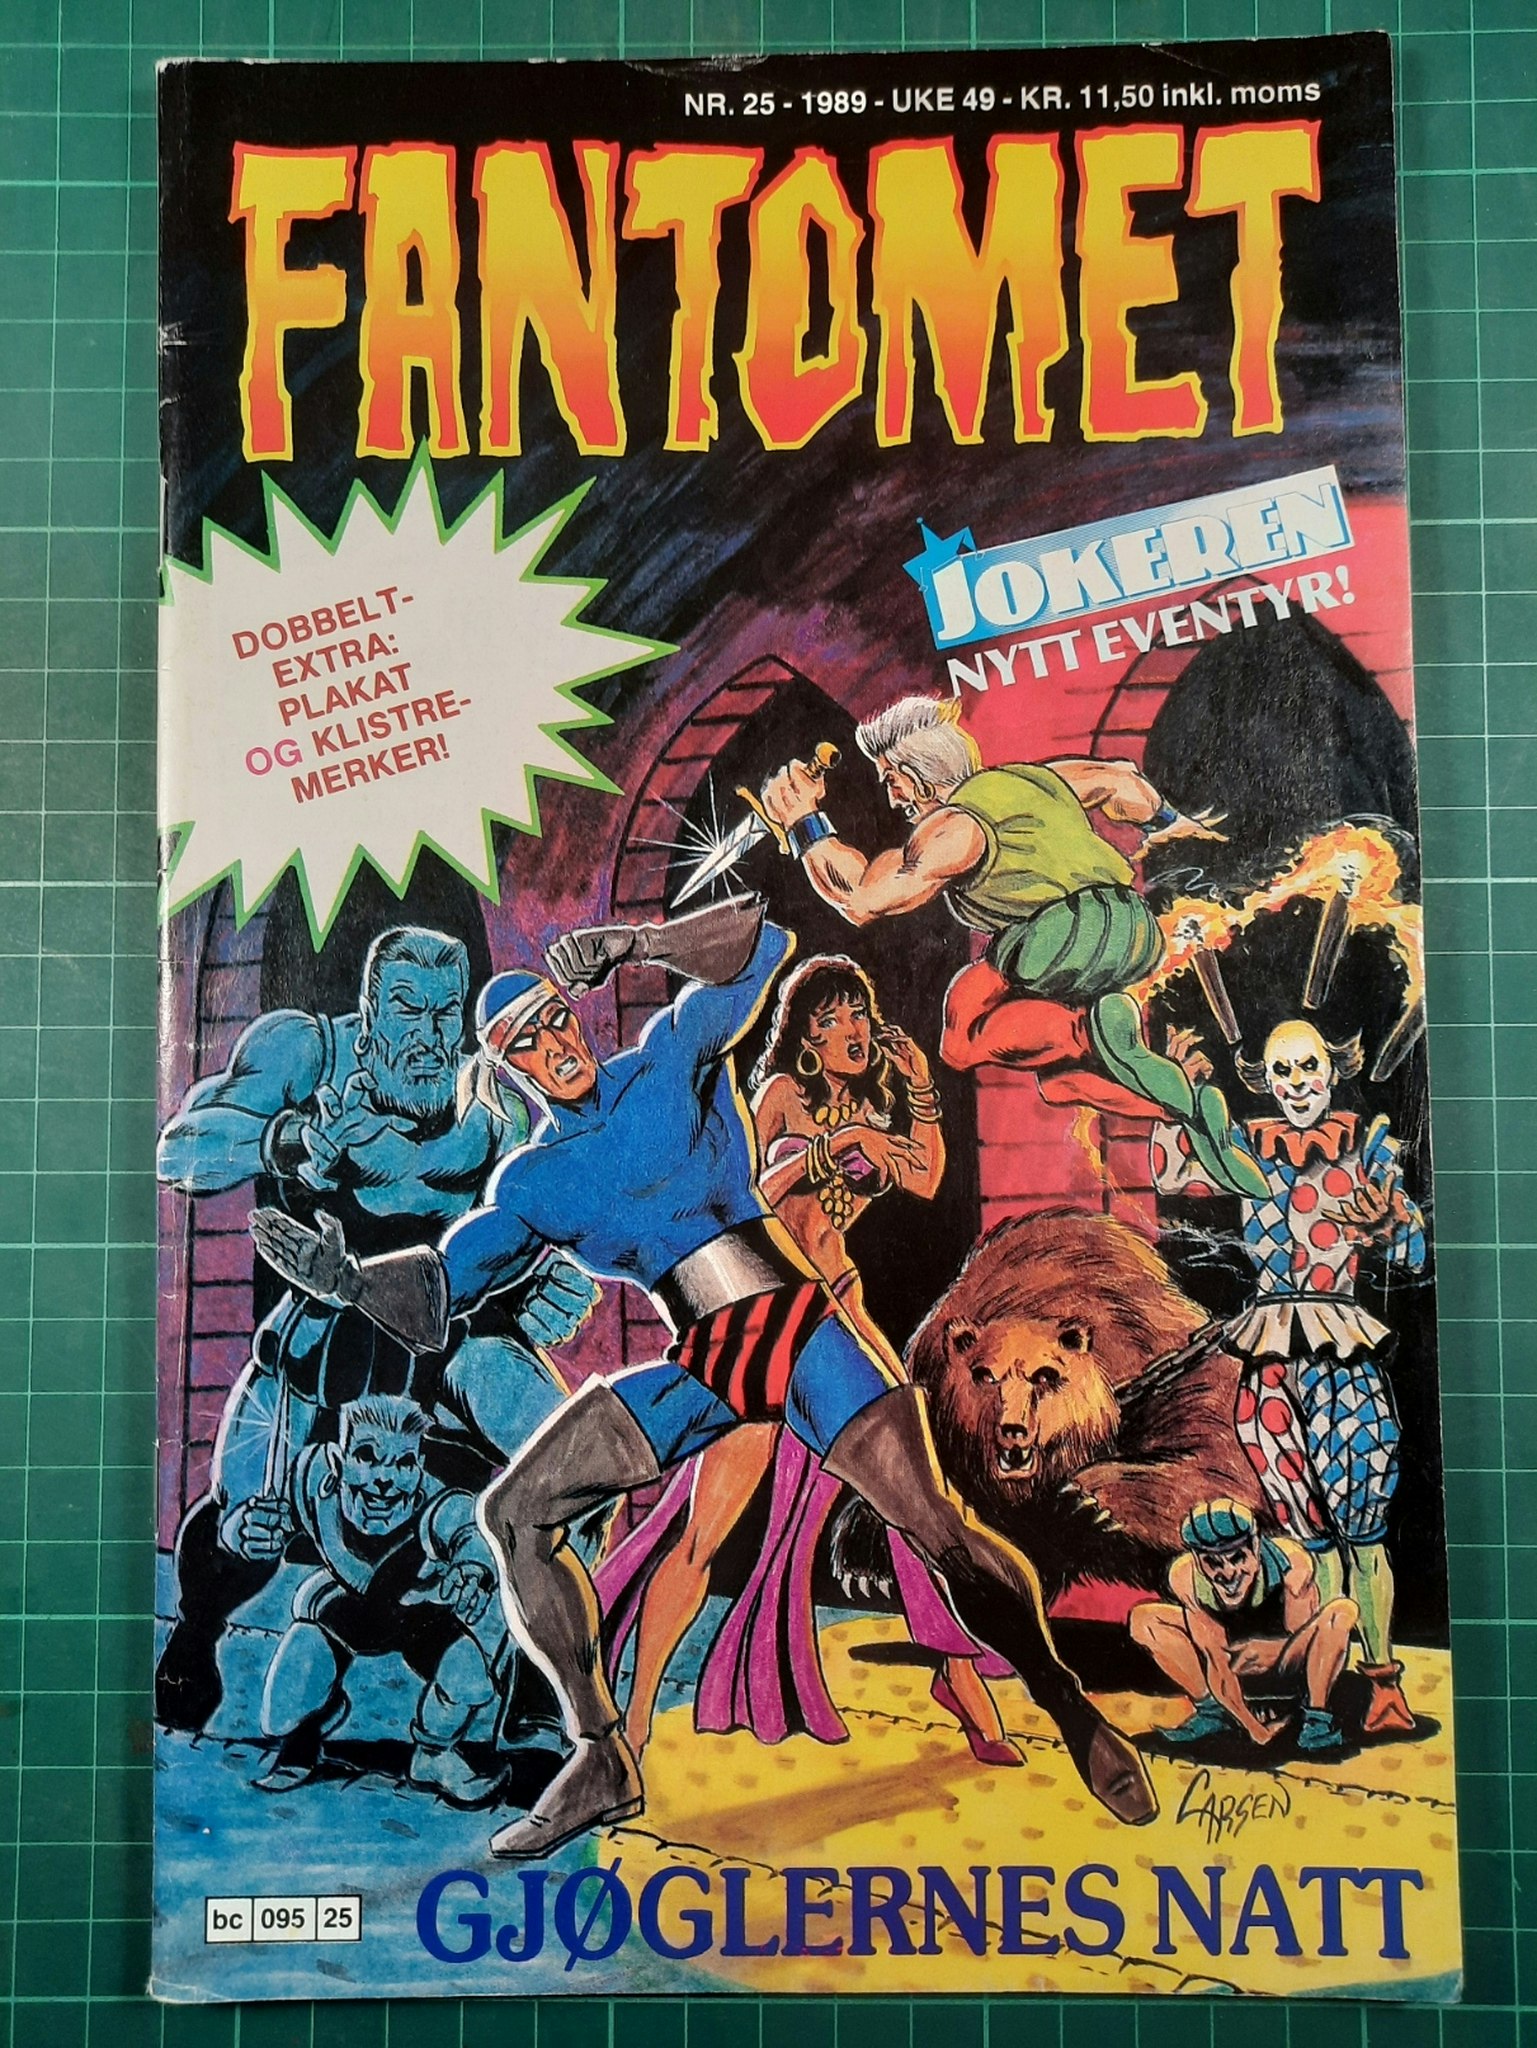 Fantomet 1989 - 25 m/poster